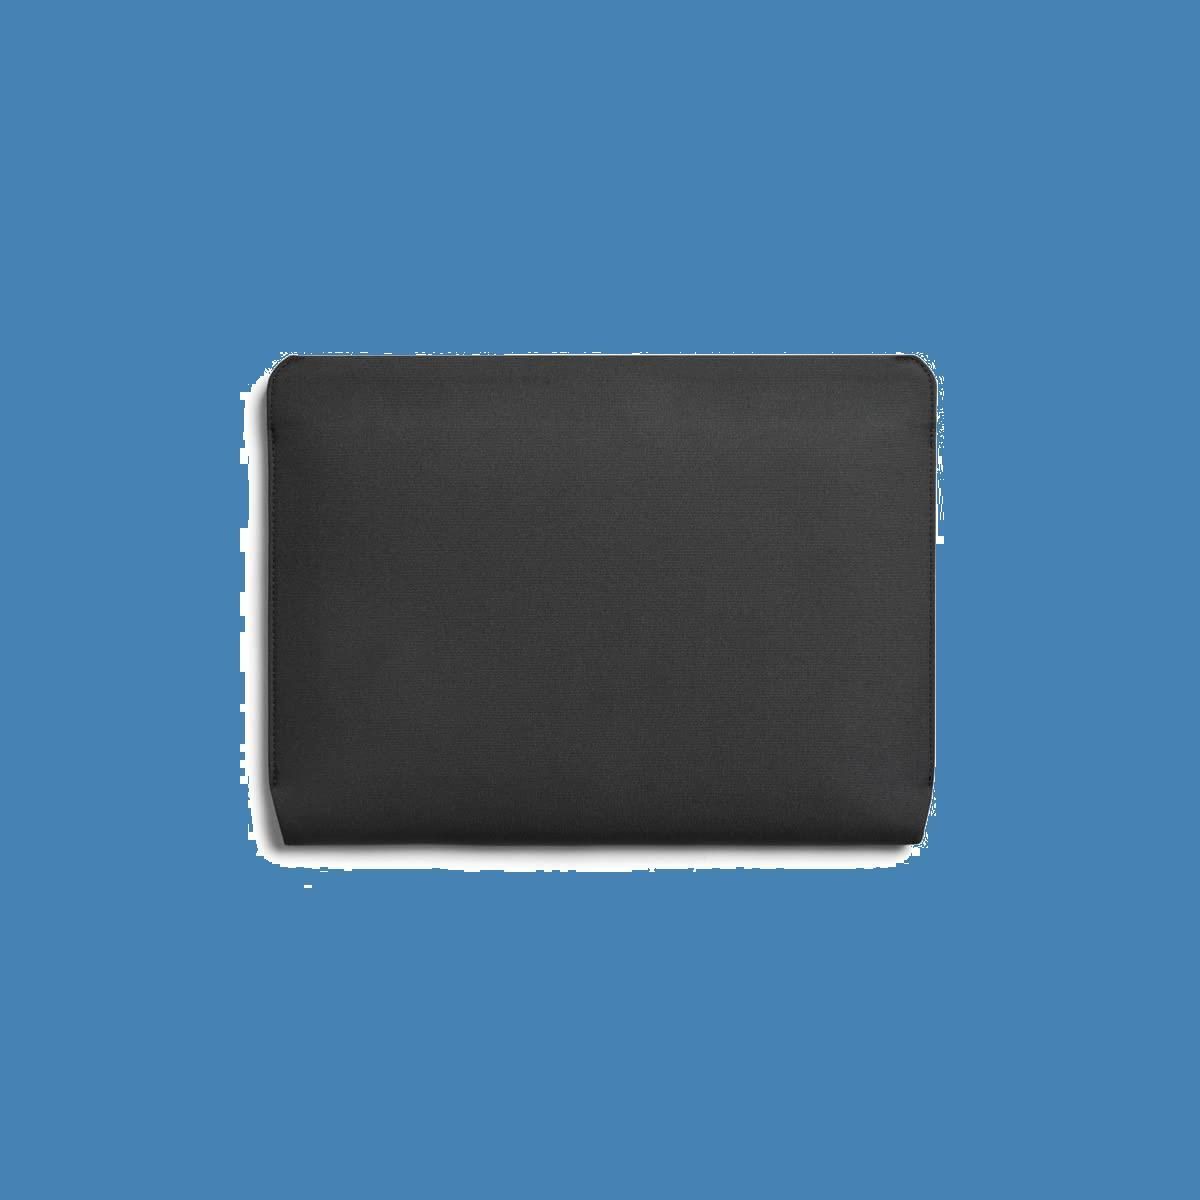 特価商品】- Pro、耐水性のあるリサイクル素材、マグネット式開閉） Slate Sleeve（16インチのMacbook Laptop Bellroy  ストロベリーショップ@フォロワー割引中 メルカリ